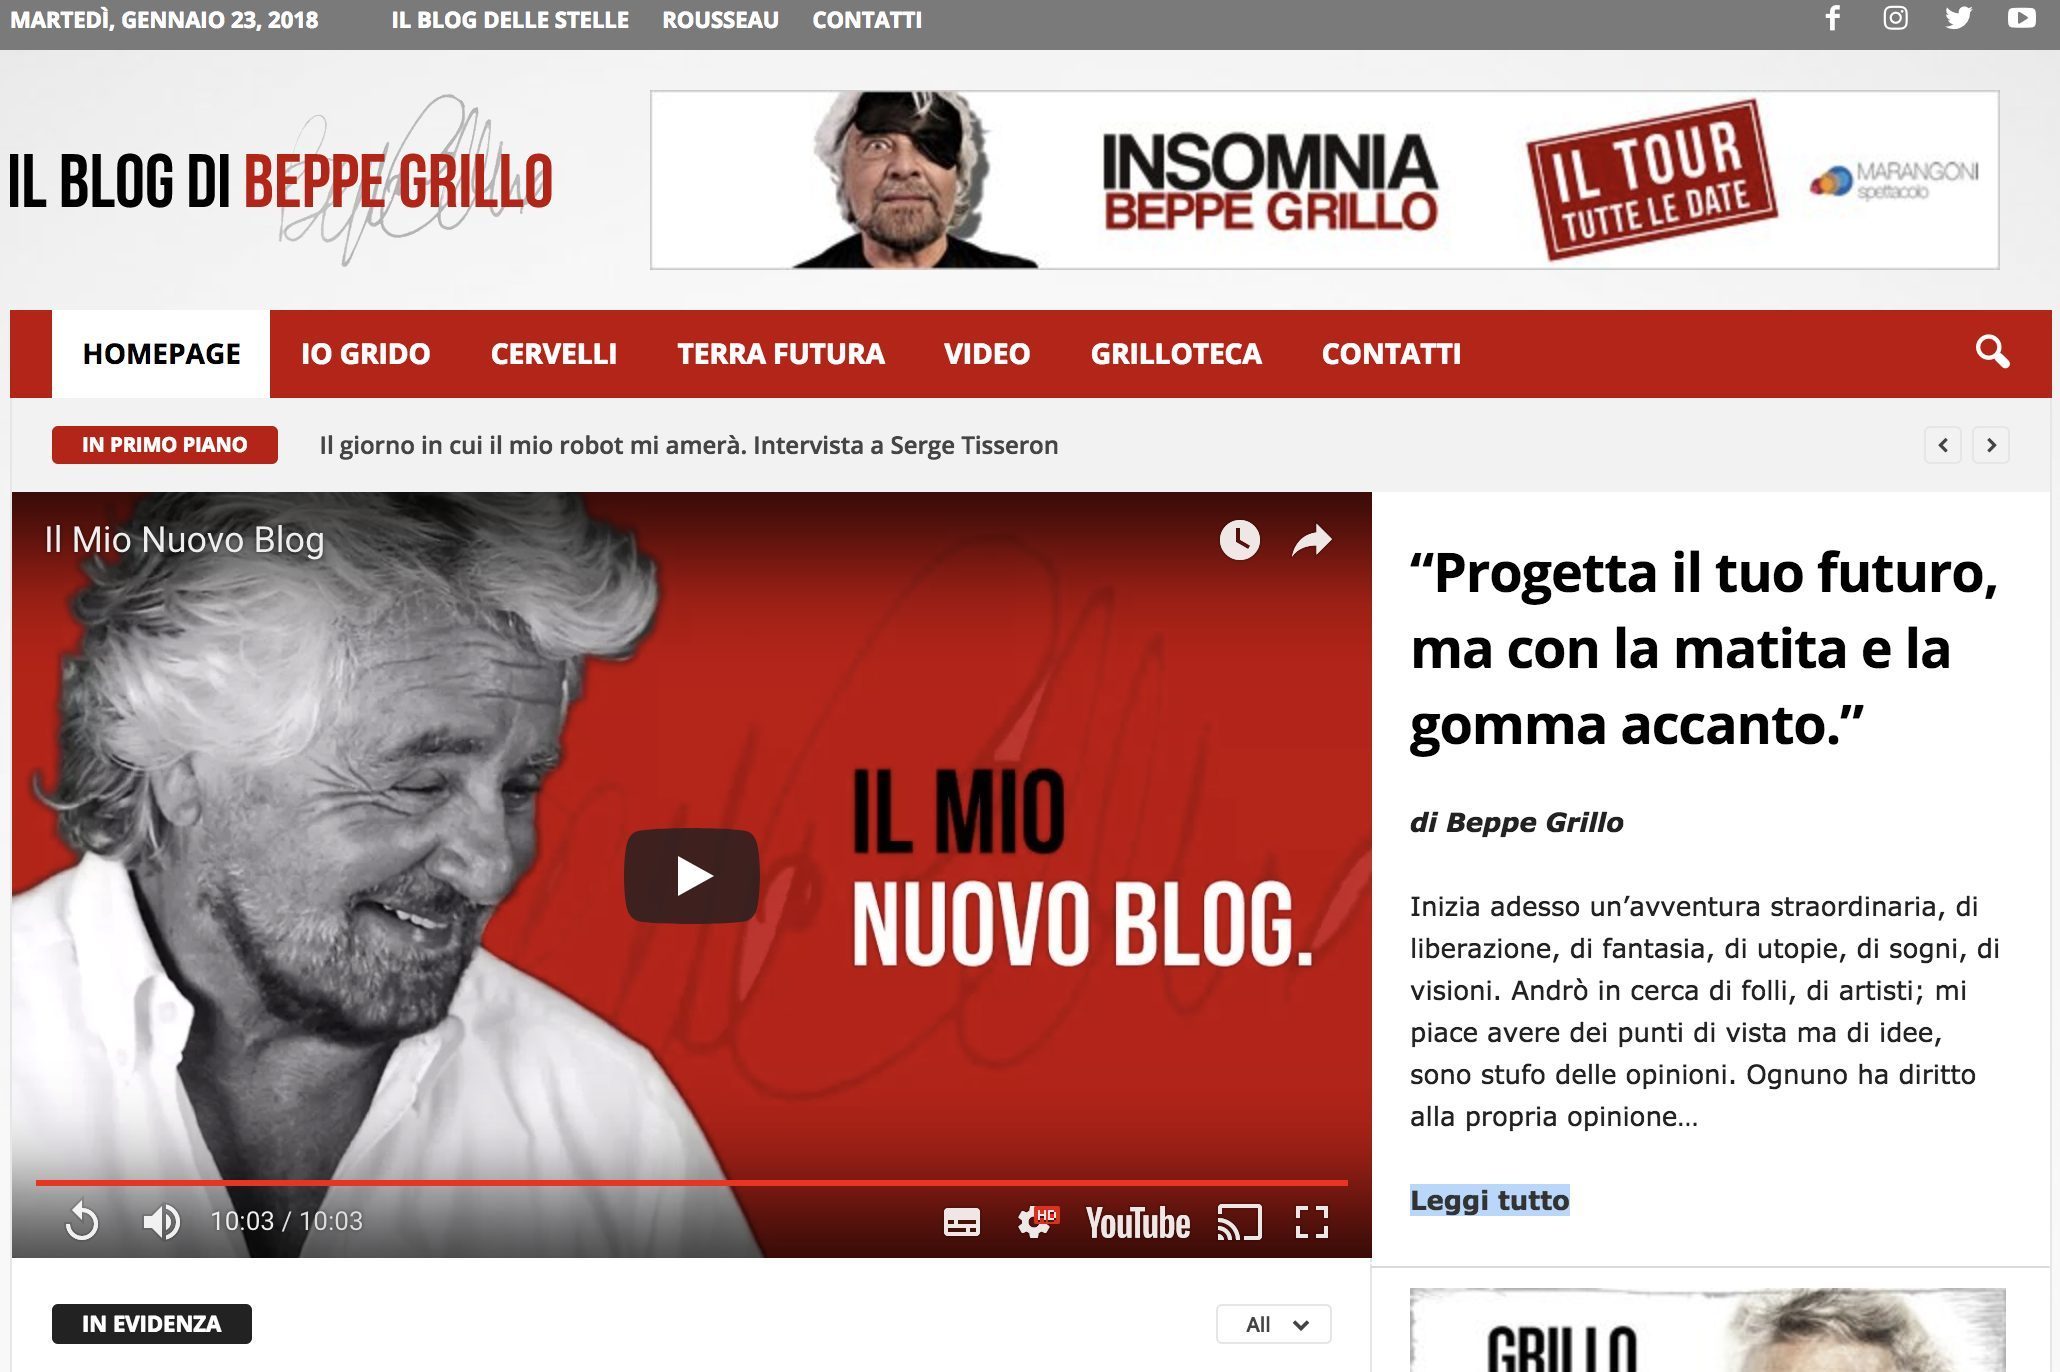 Il Blog di Beppe Grillo rischia la chiusura